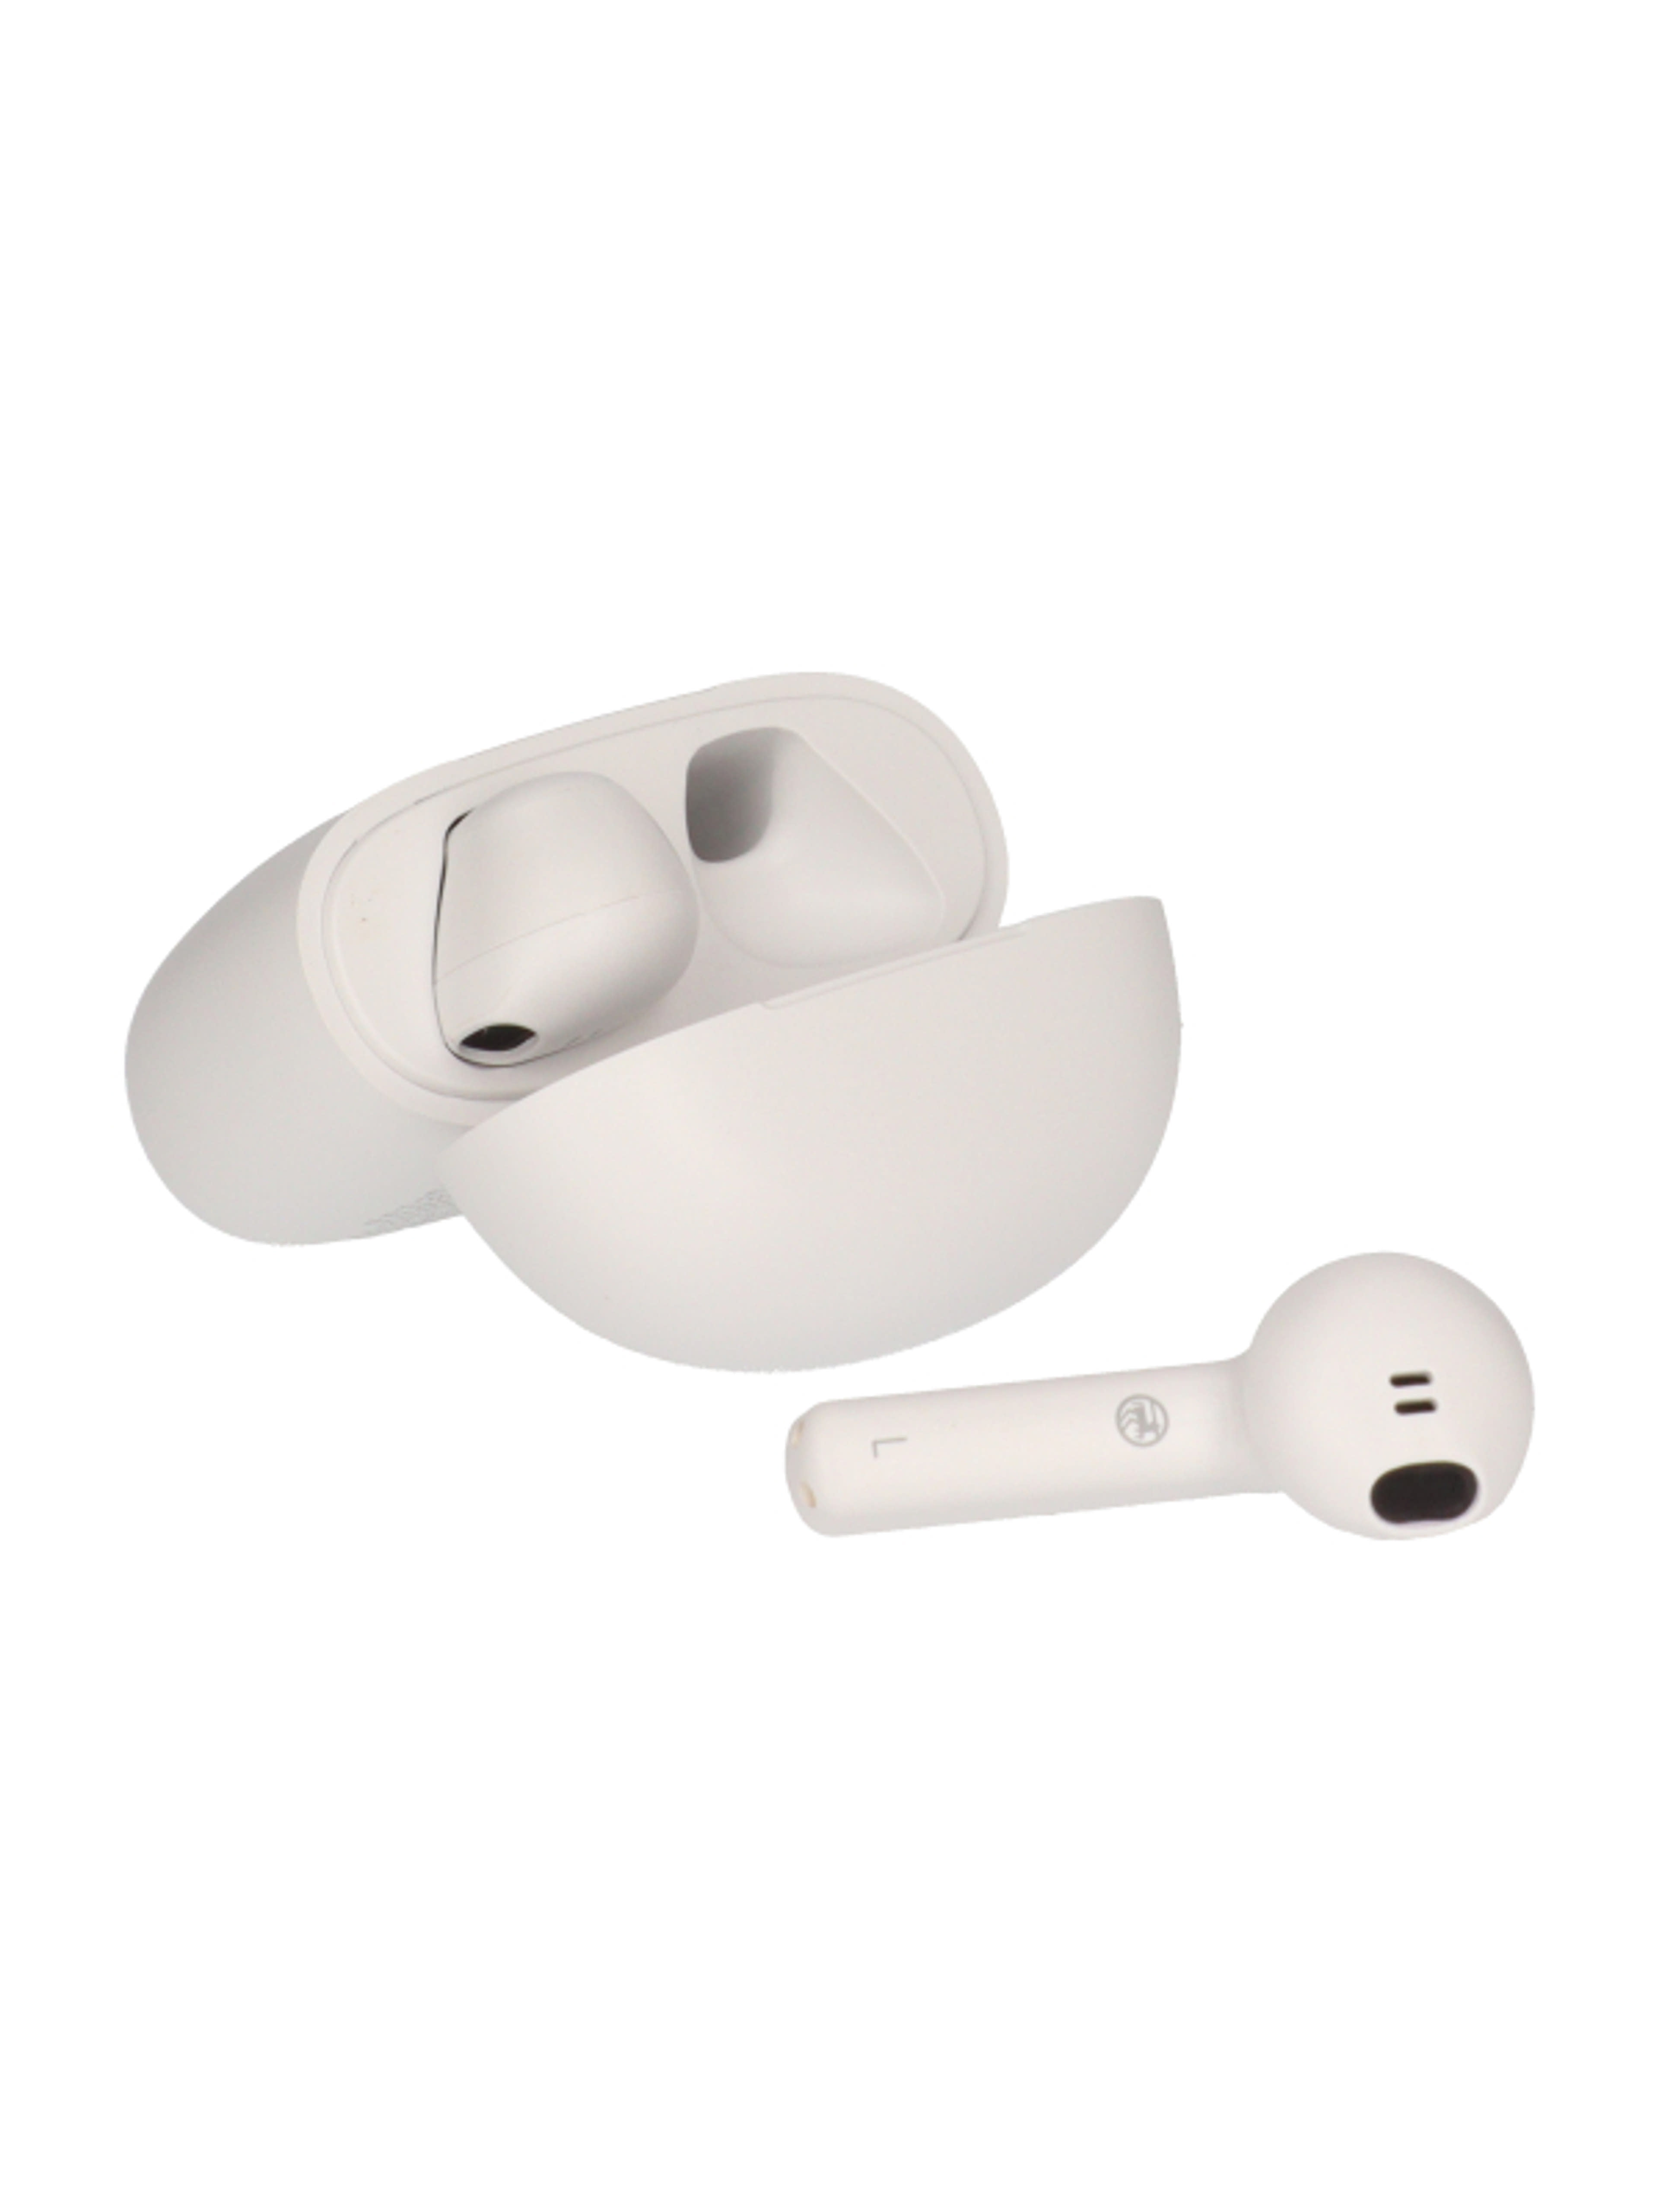 Ideen Welt in-ear Bluetooth fejhallgató - 1 db-5